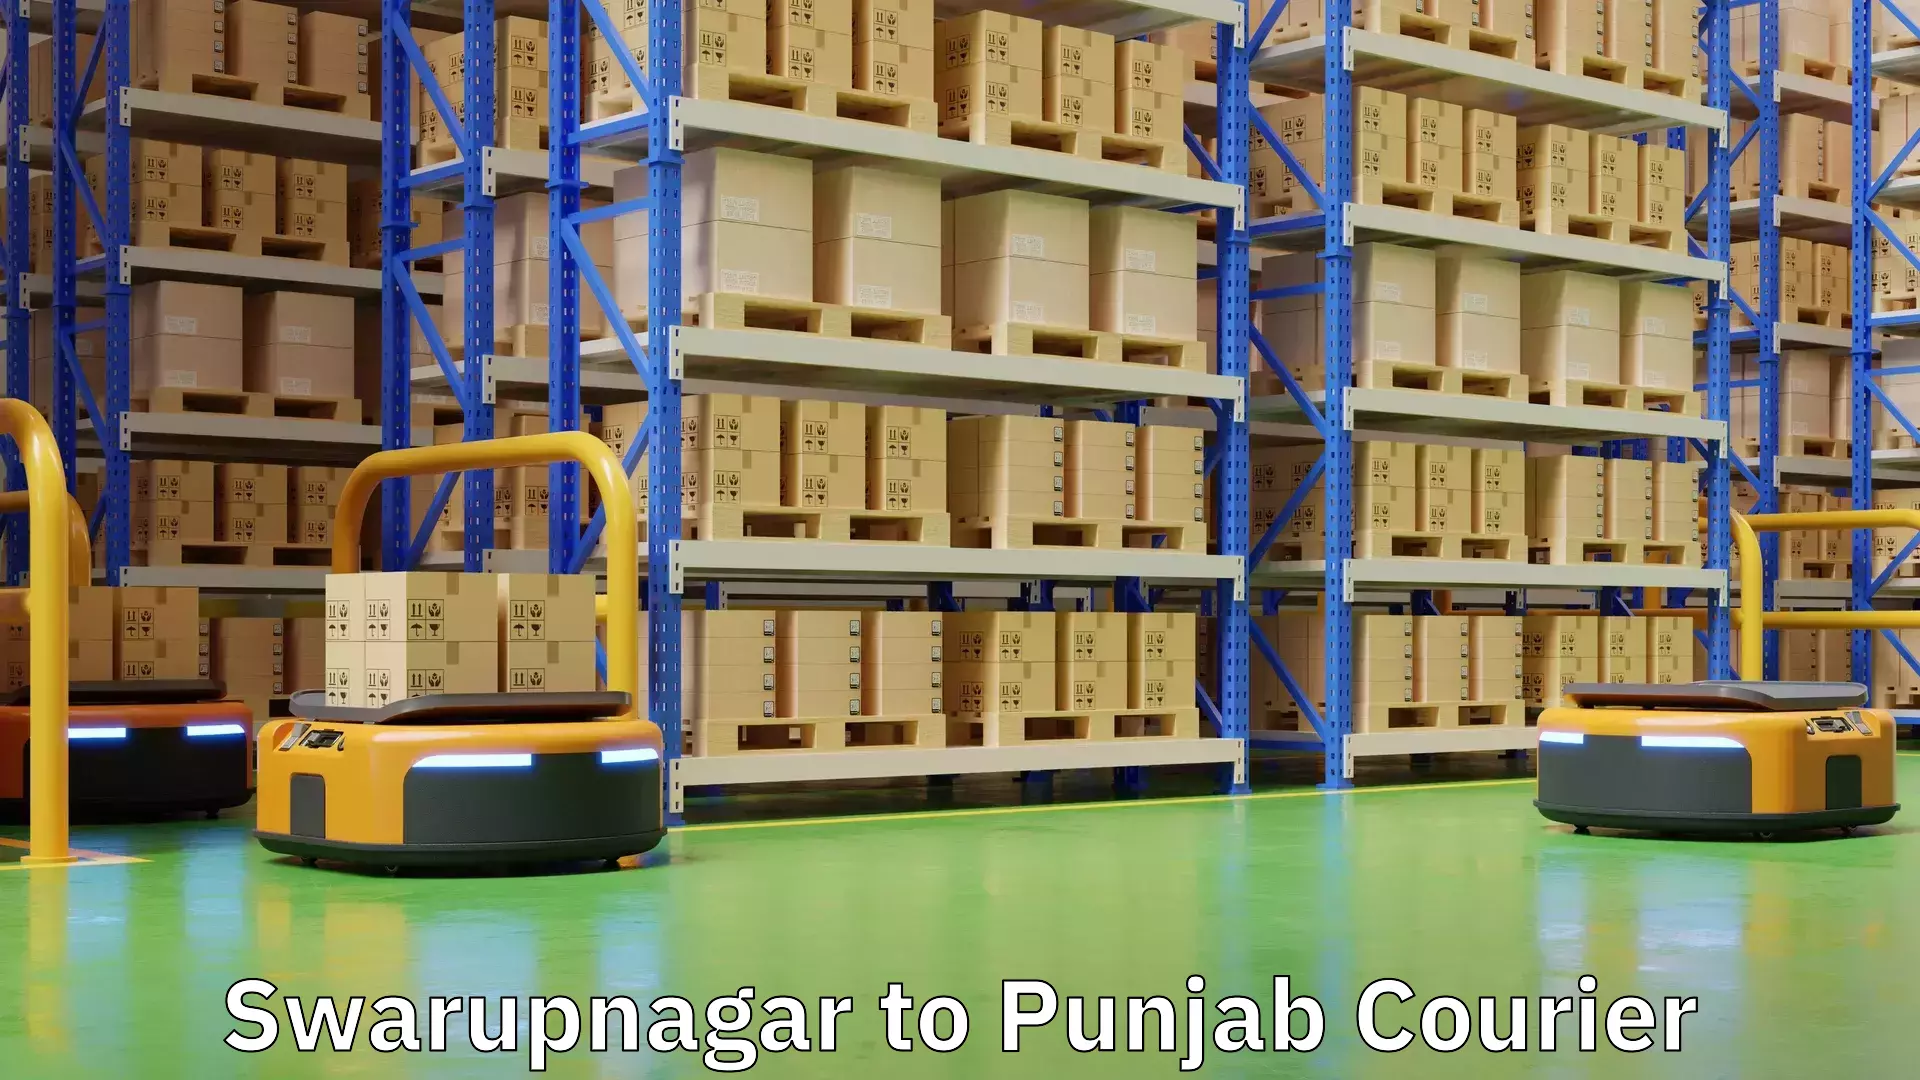 Global parcel delivery in Swarupnagar to Punjab